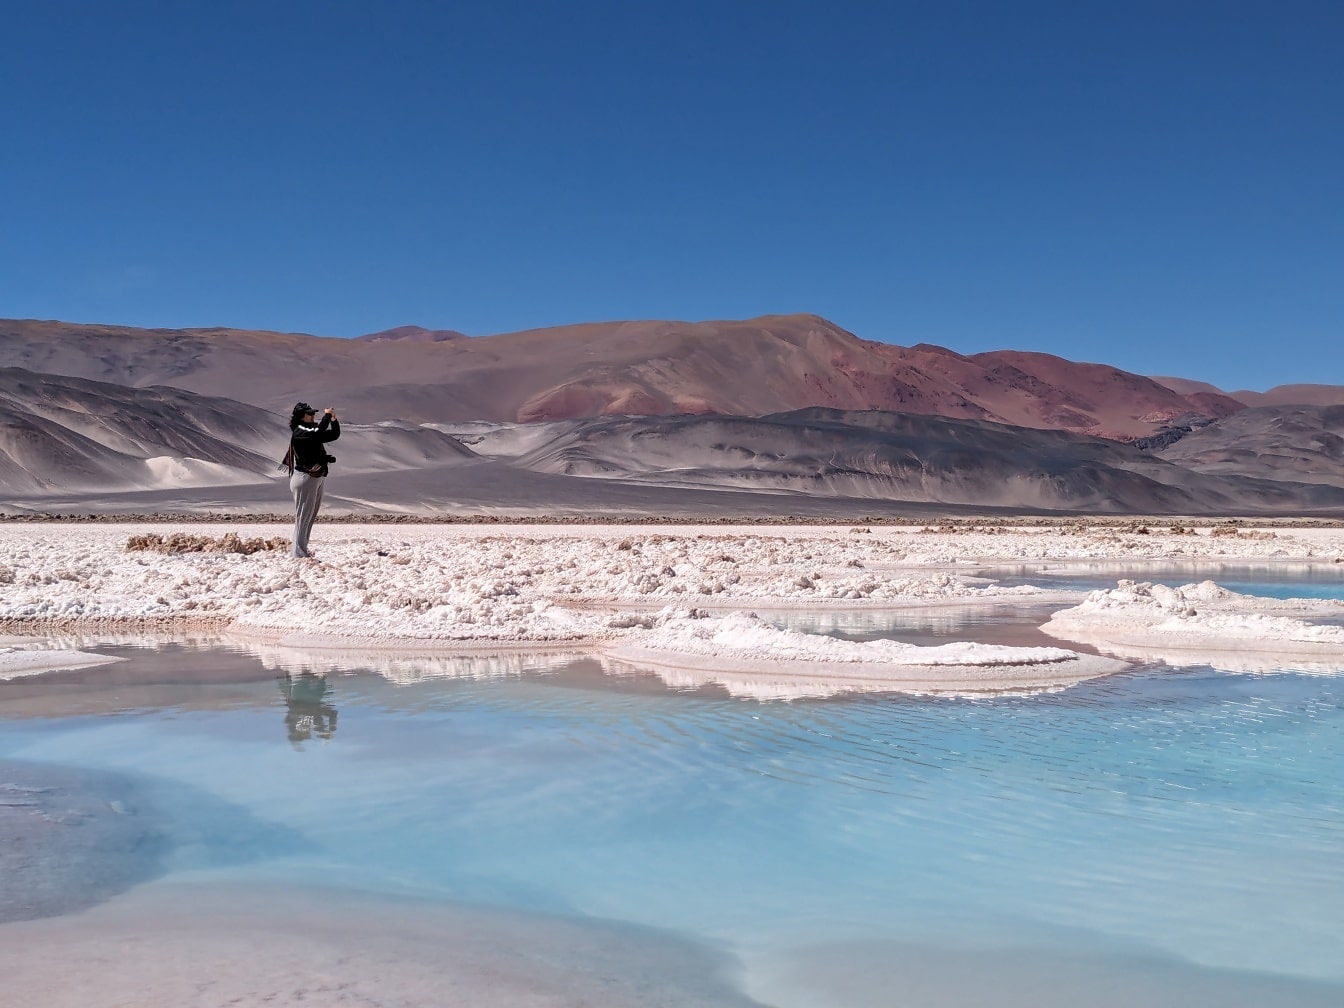 Турист стоит на пляже соленого озера пустыни и фотографирует пейзаж пустынного оазиса